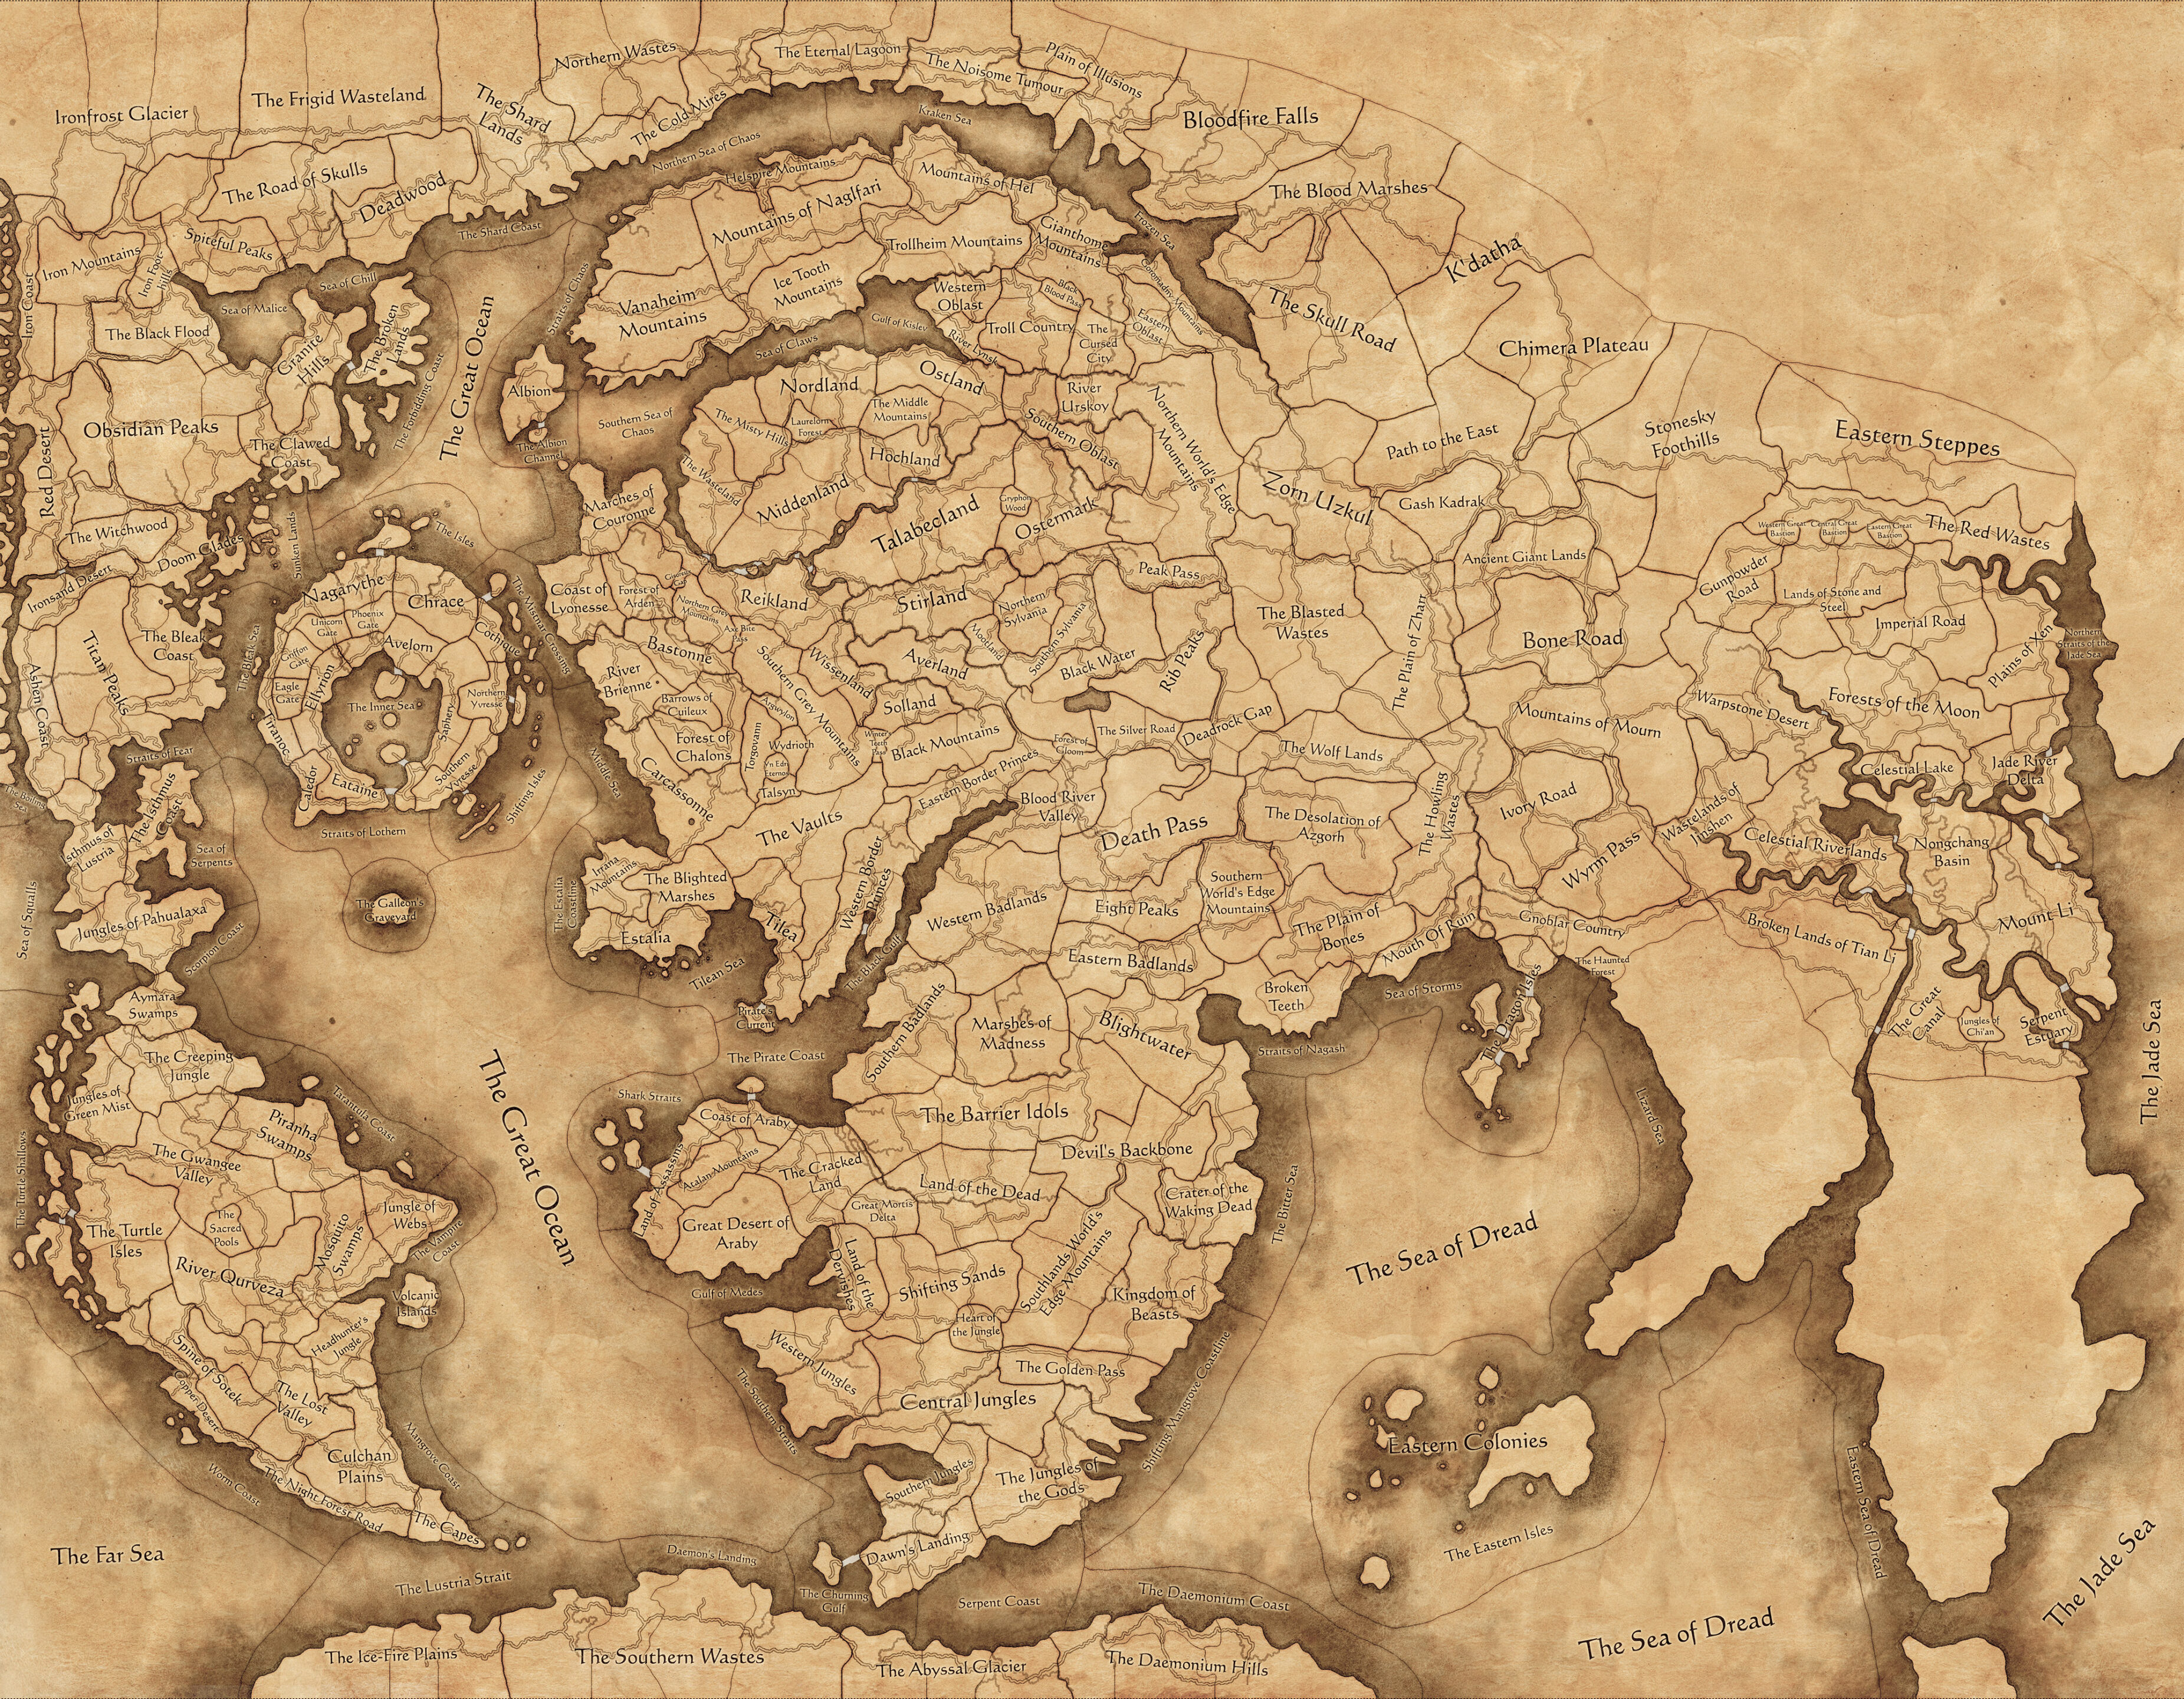 Obraz Total War: Warhammer III Immortal Empires Game Map, obejmujący znaczną część świata Warhammer